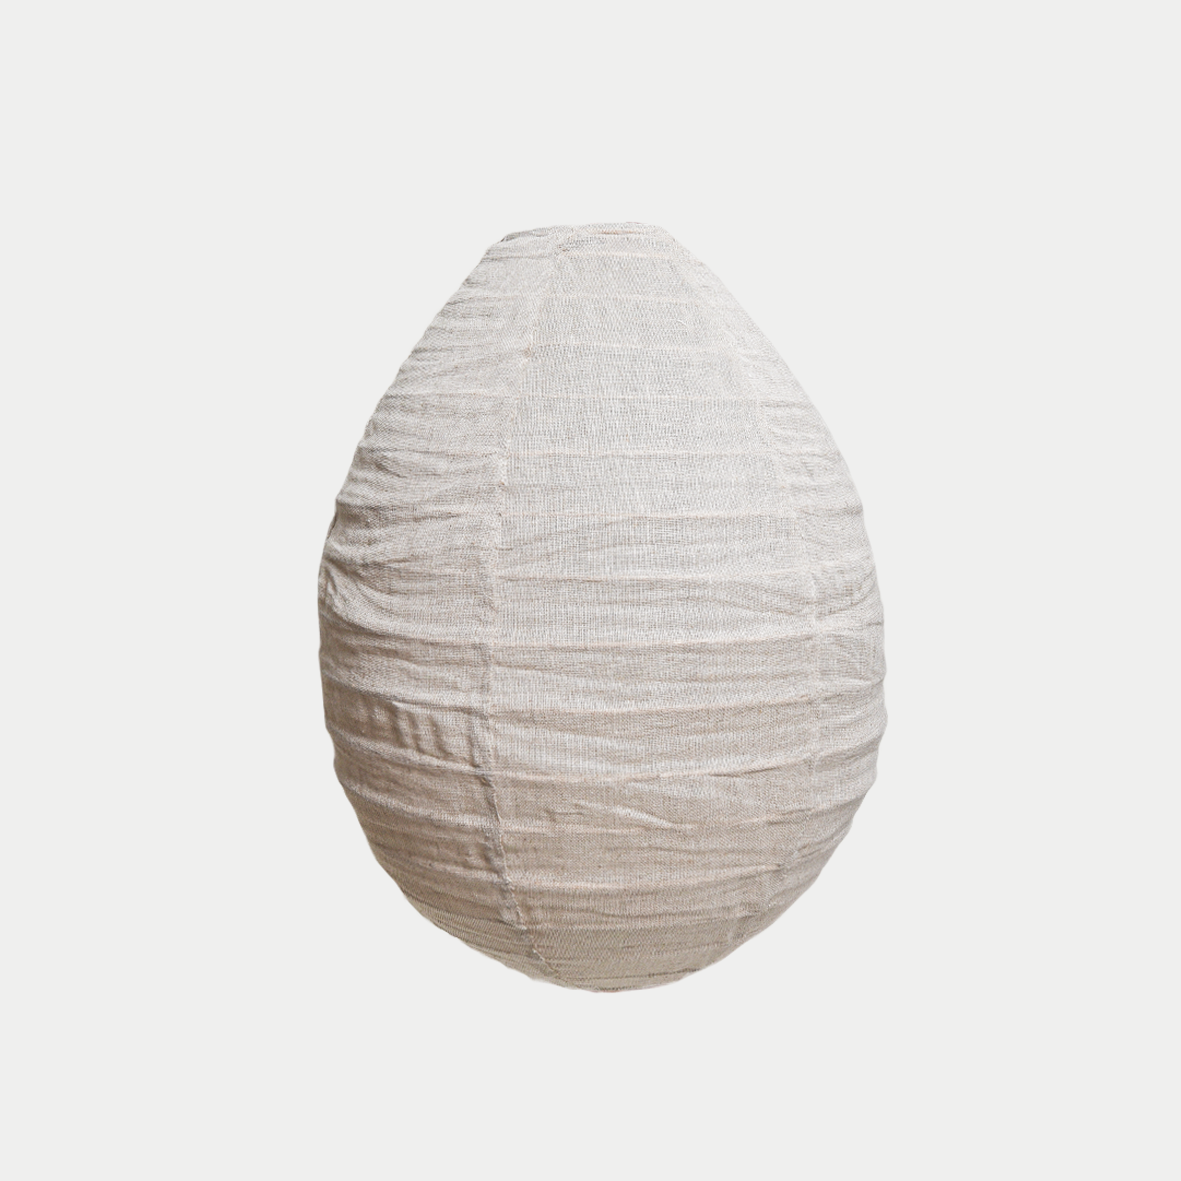 Linen Pendant - Pear 35cm Natural